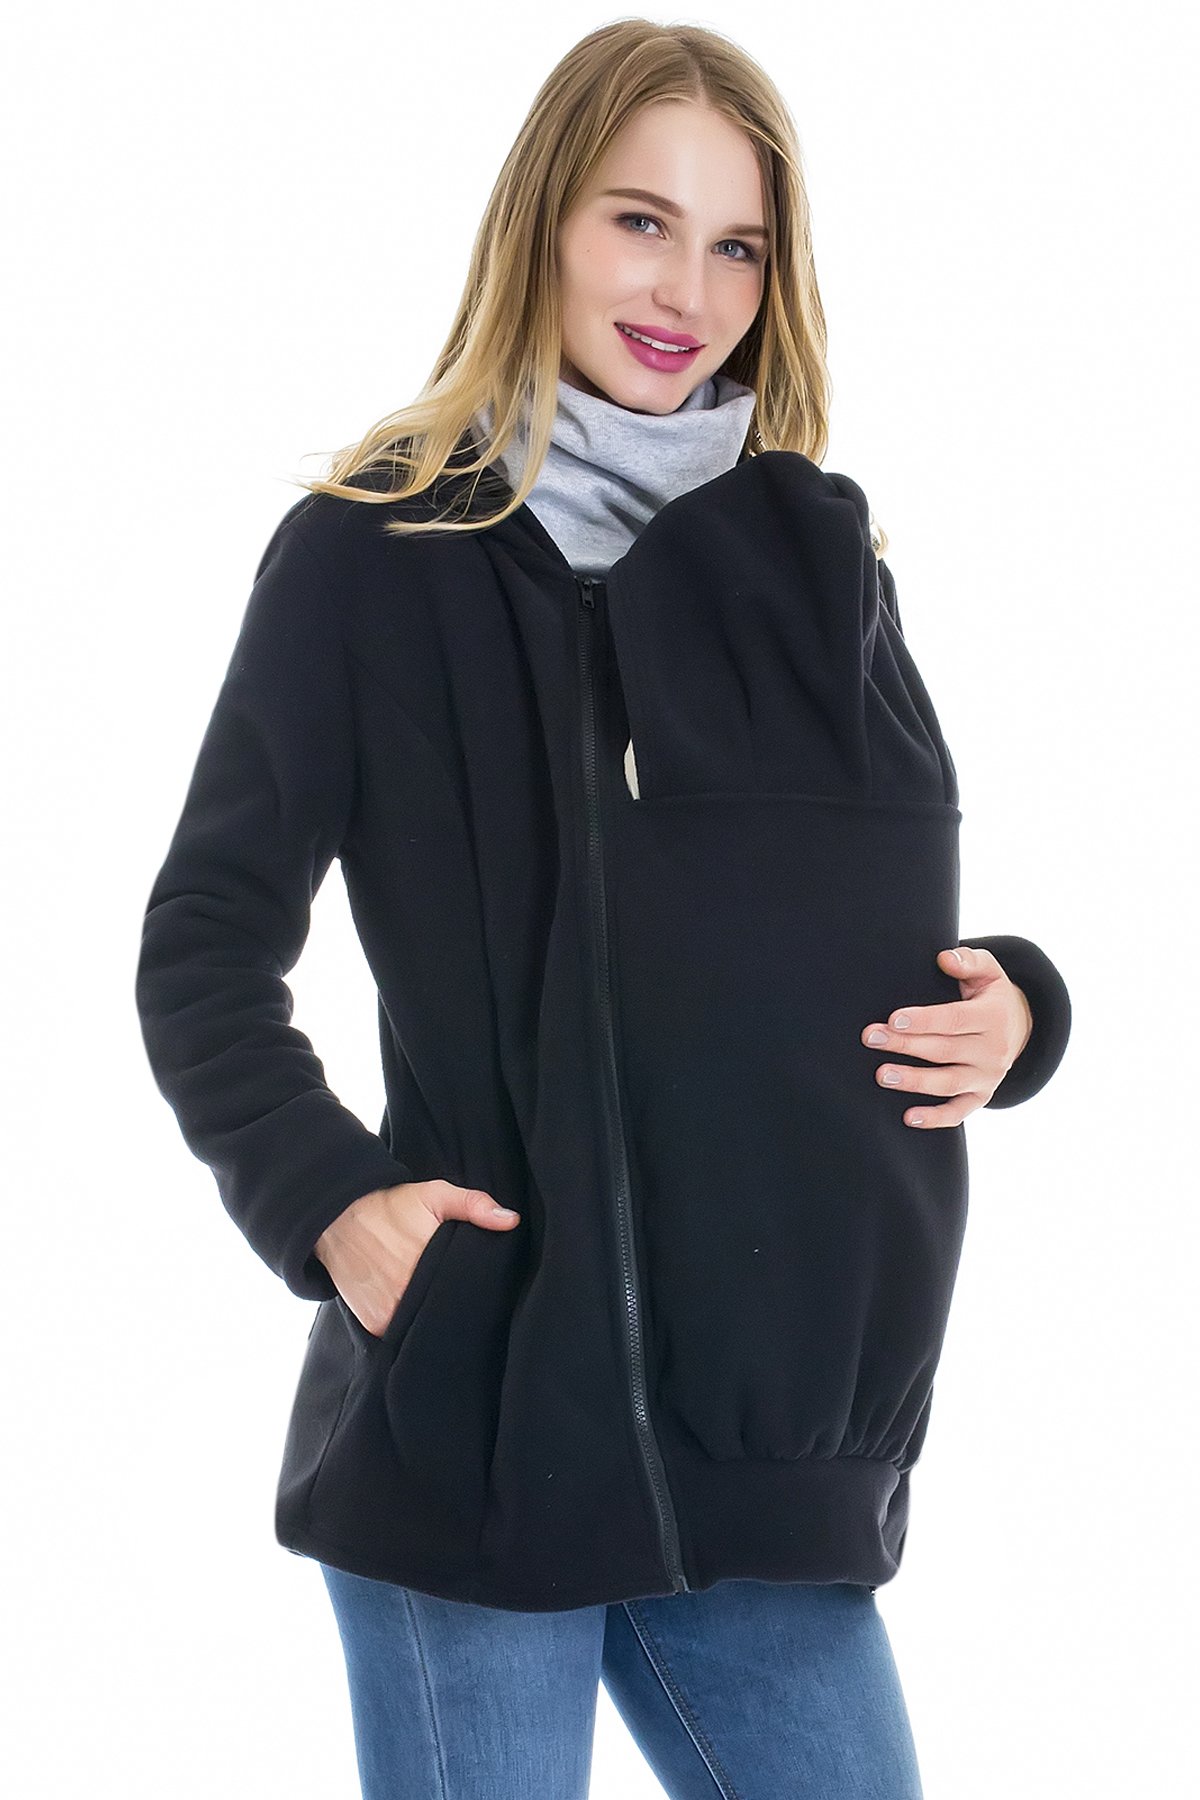 Smallshow Tragejacke für Baby, 3 IN 1 Kängurujacke aus Fleece, Umstandsjacke mit Reißverschluss, Mutterschaft Hoodie Black M